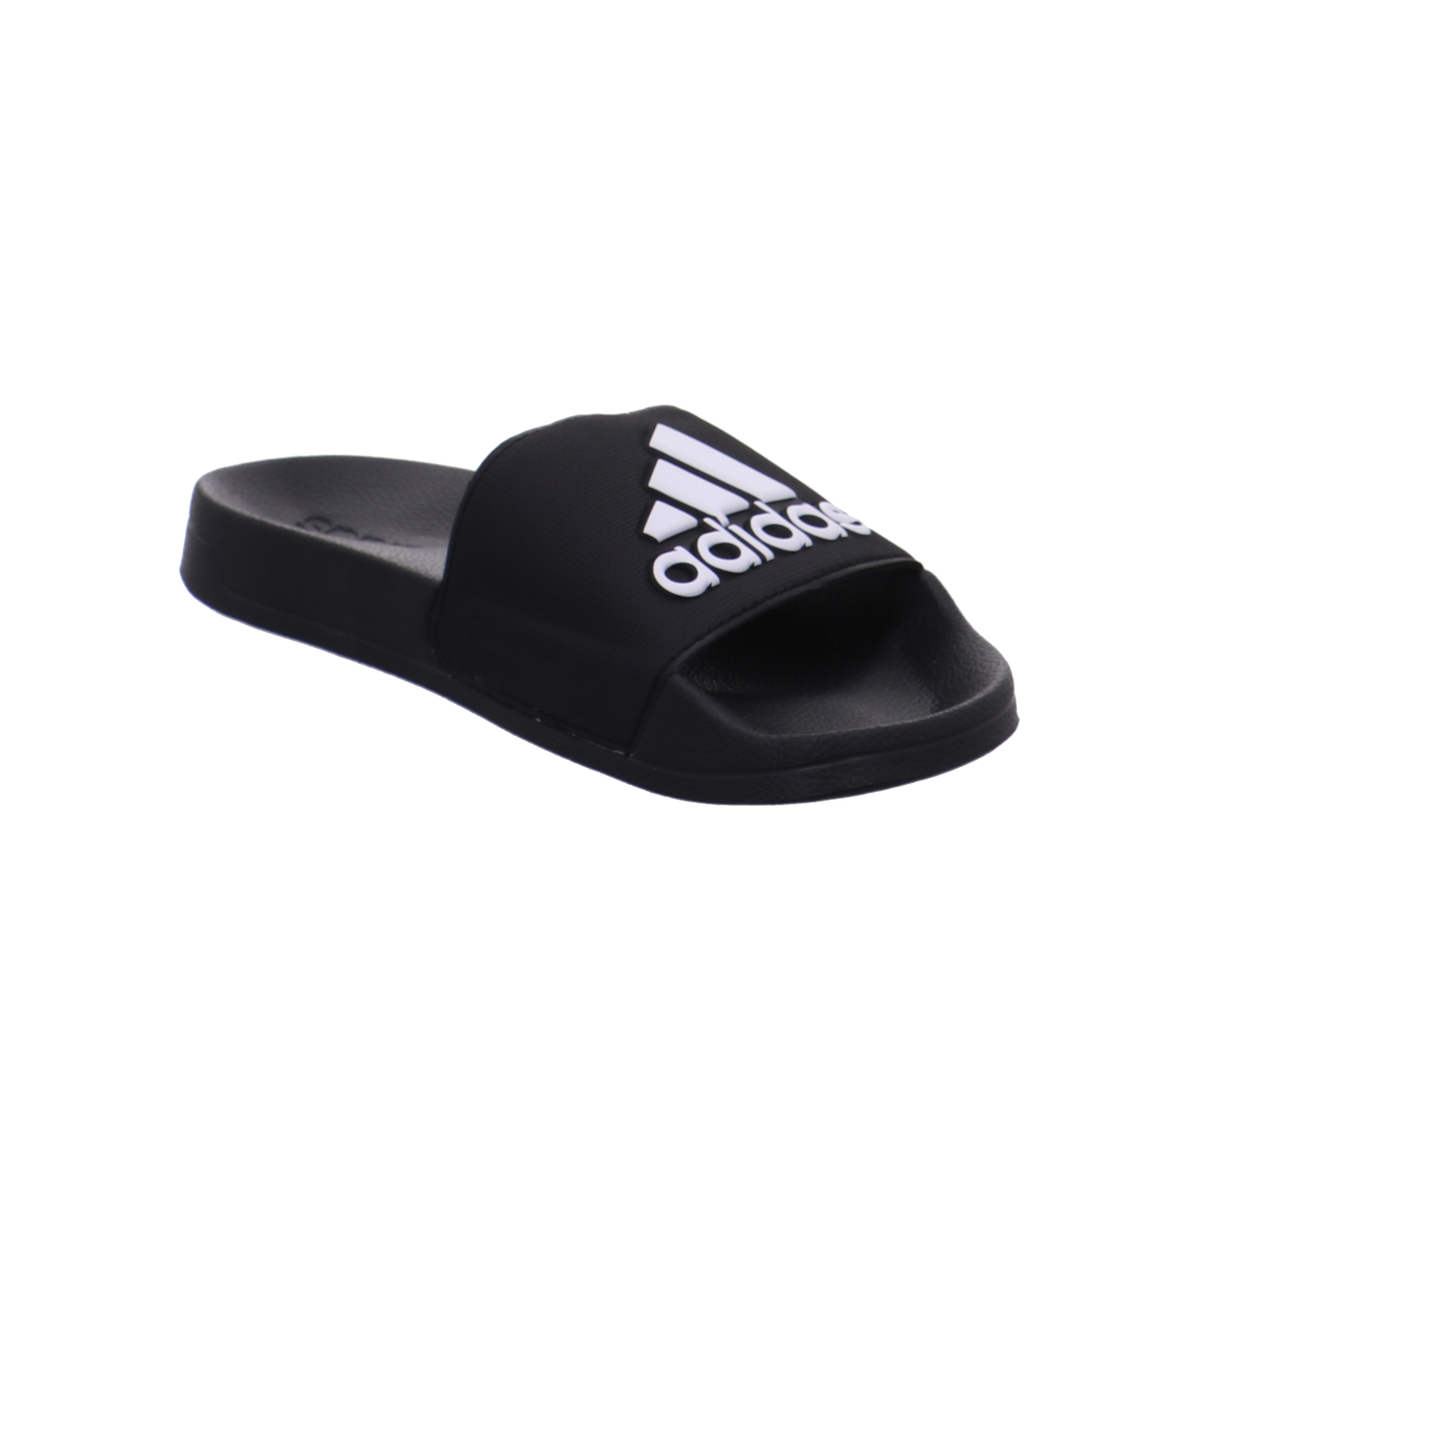 Adidas Schuhe  schwarz-weiß Bild7